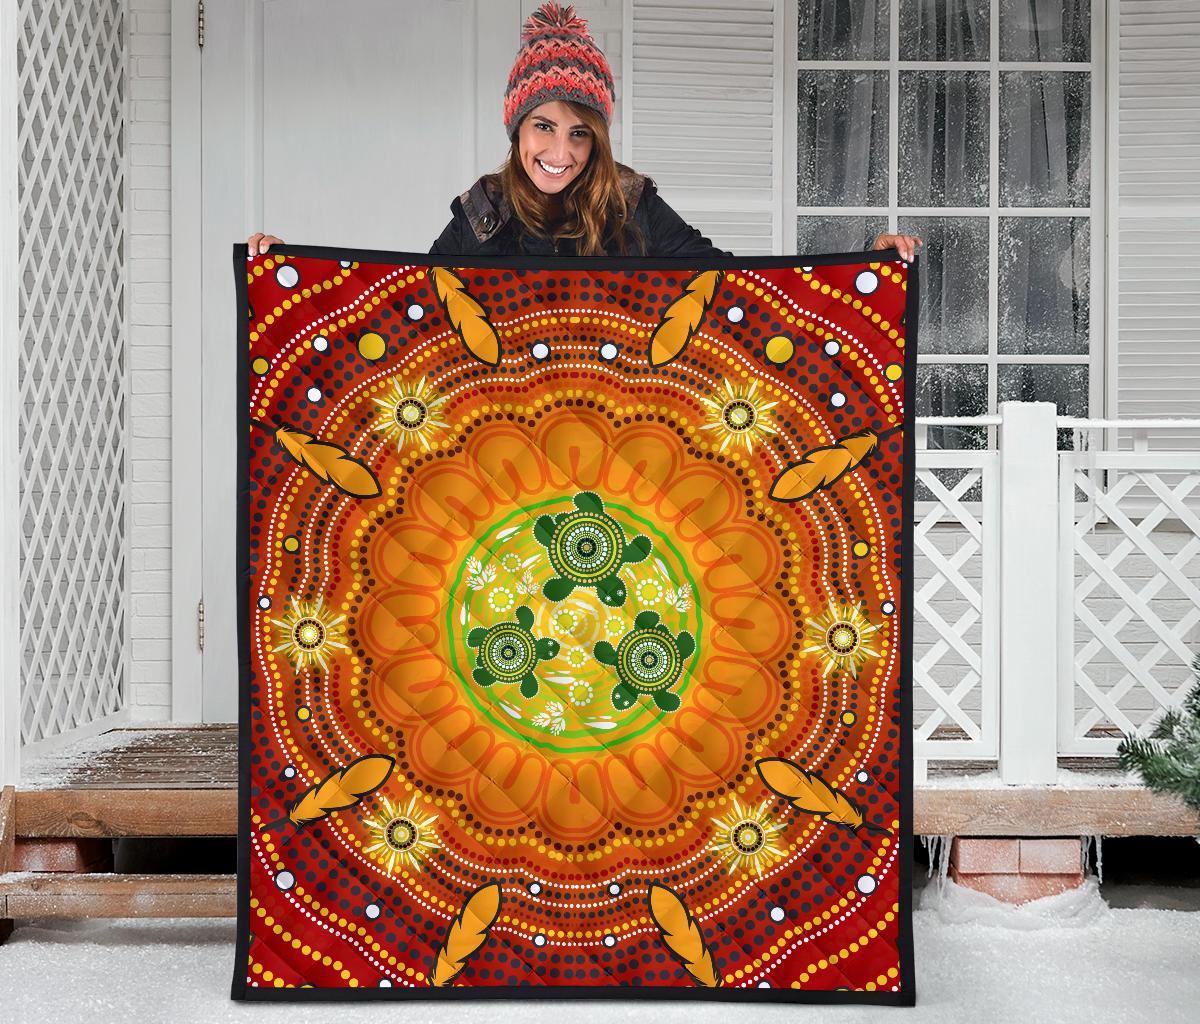 Aboriginal Premium Quilt - Turtle Circle Dot Painting Art